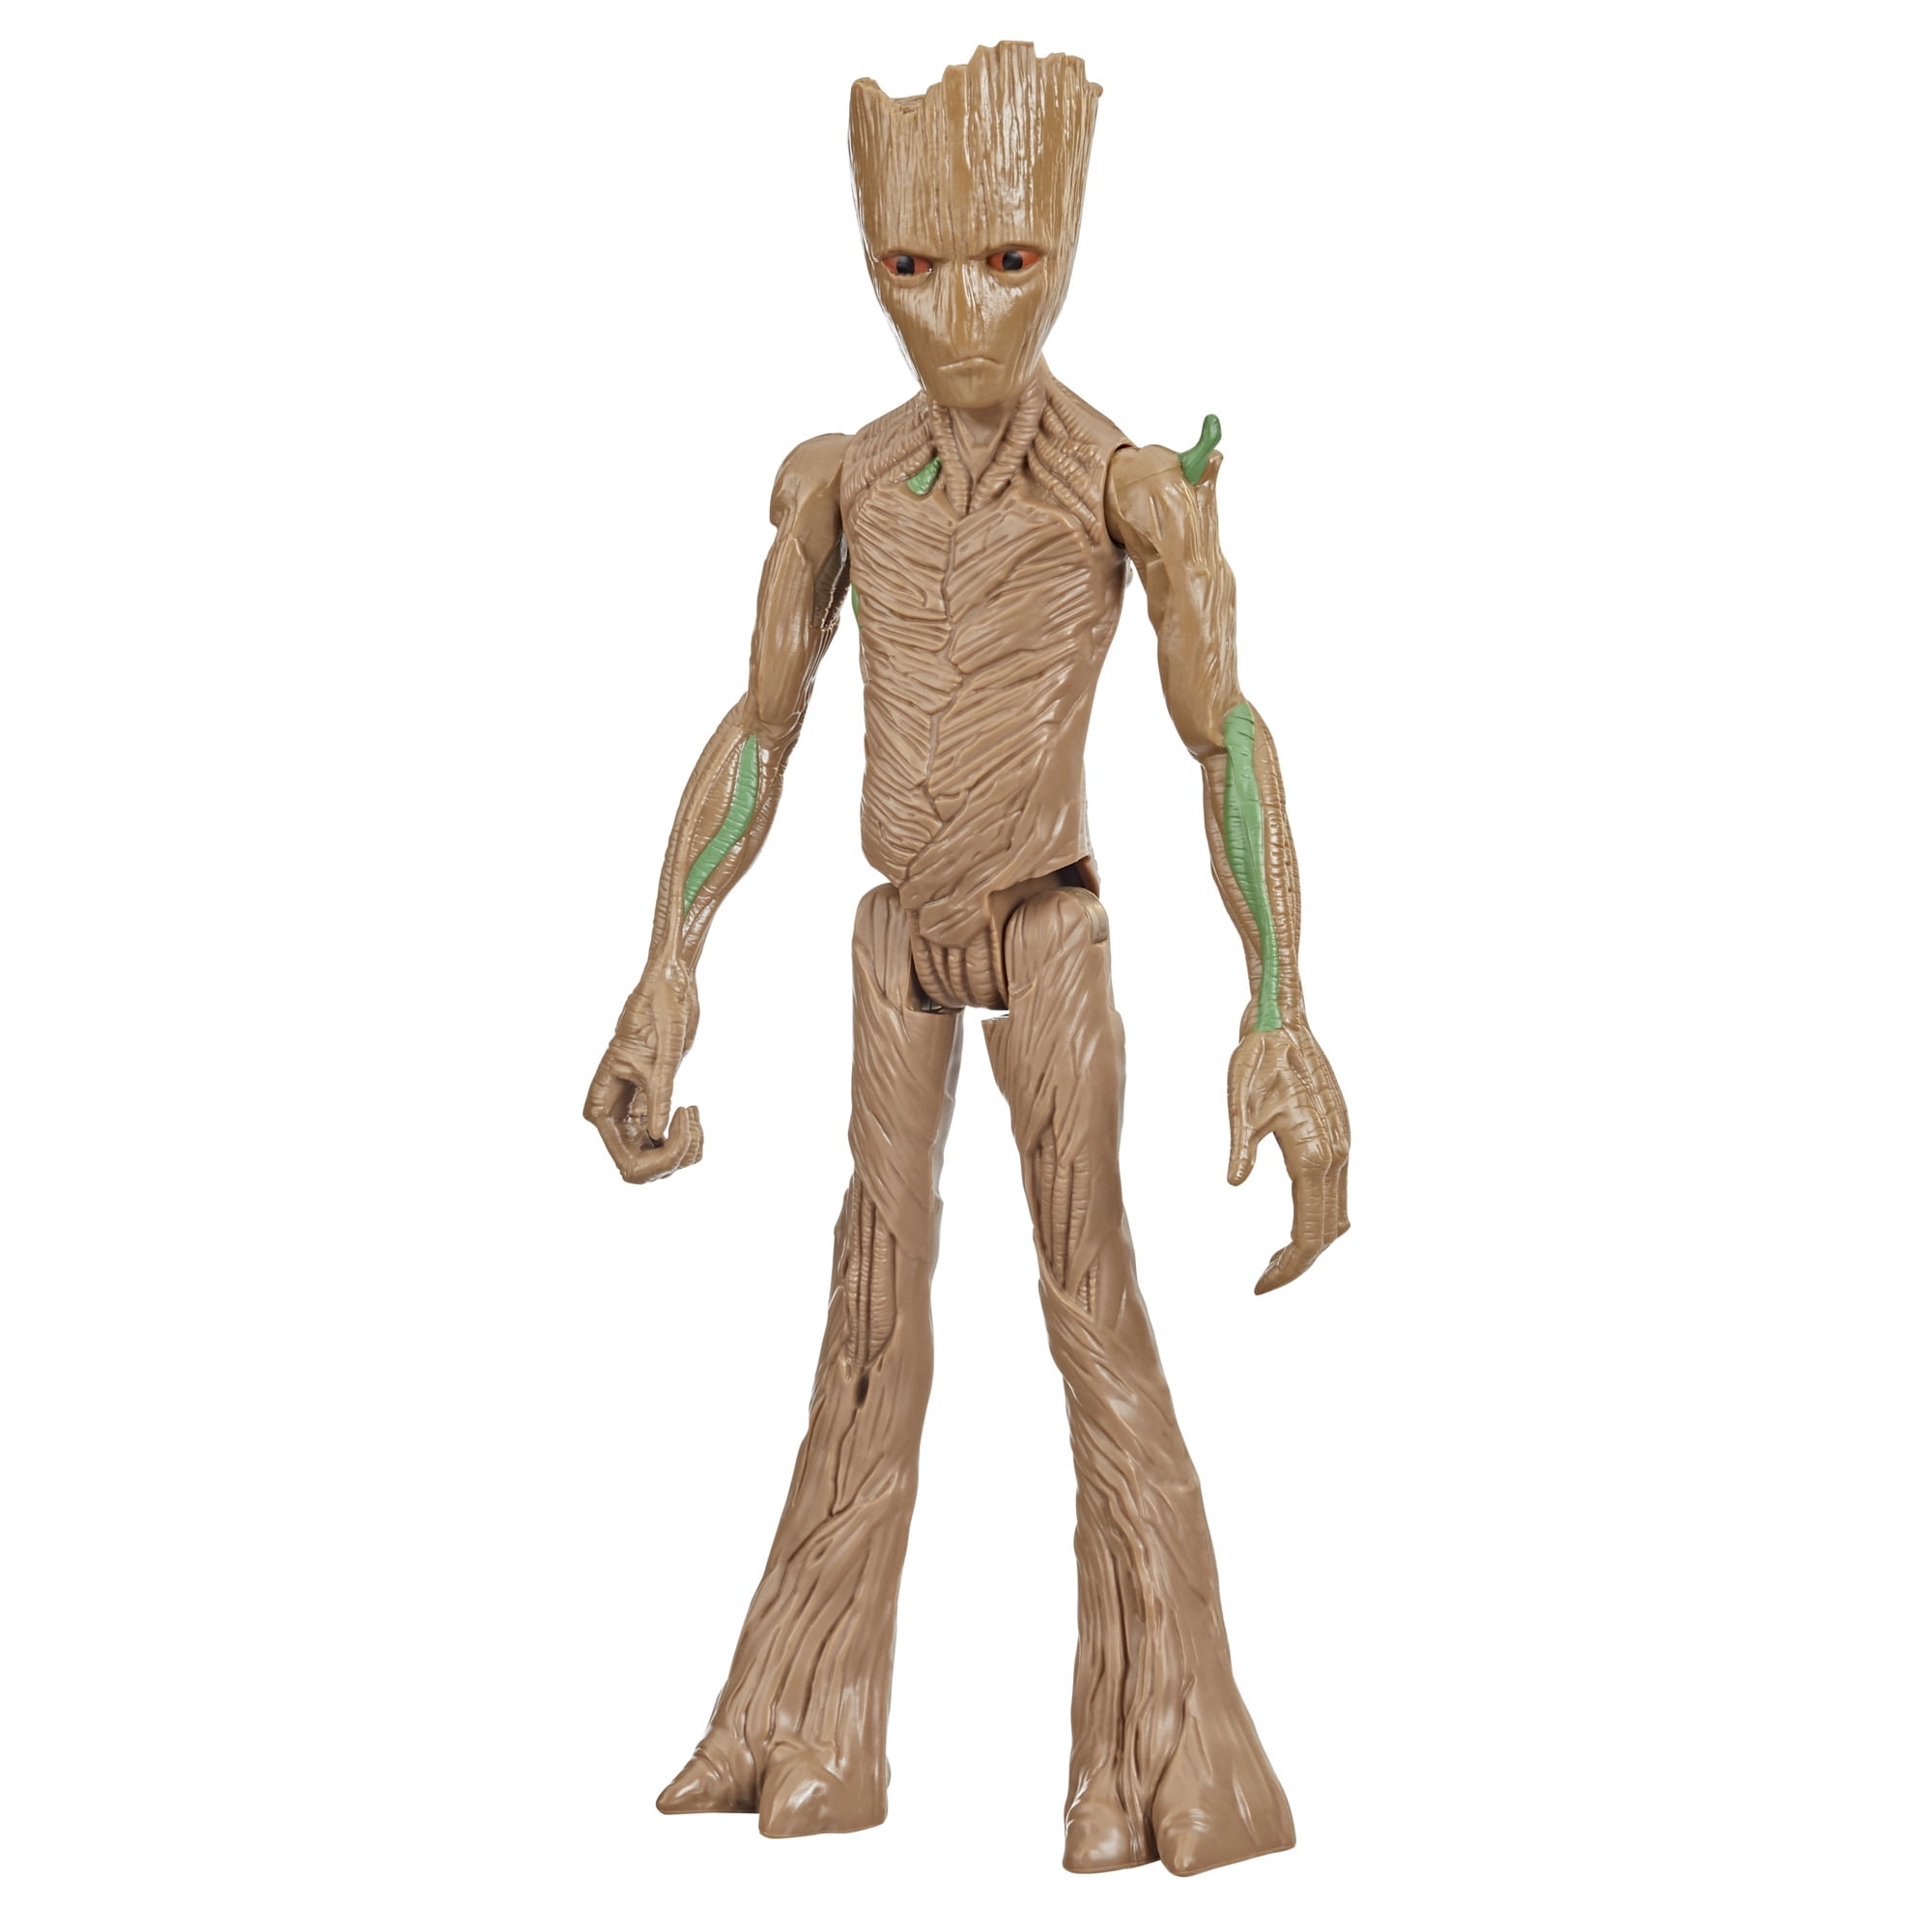 Avengers endgame - hulk - figurine marvel titan power fx deluxe 30